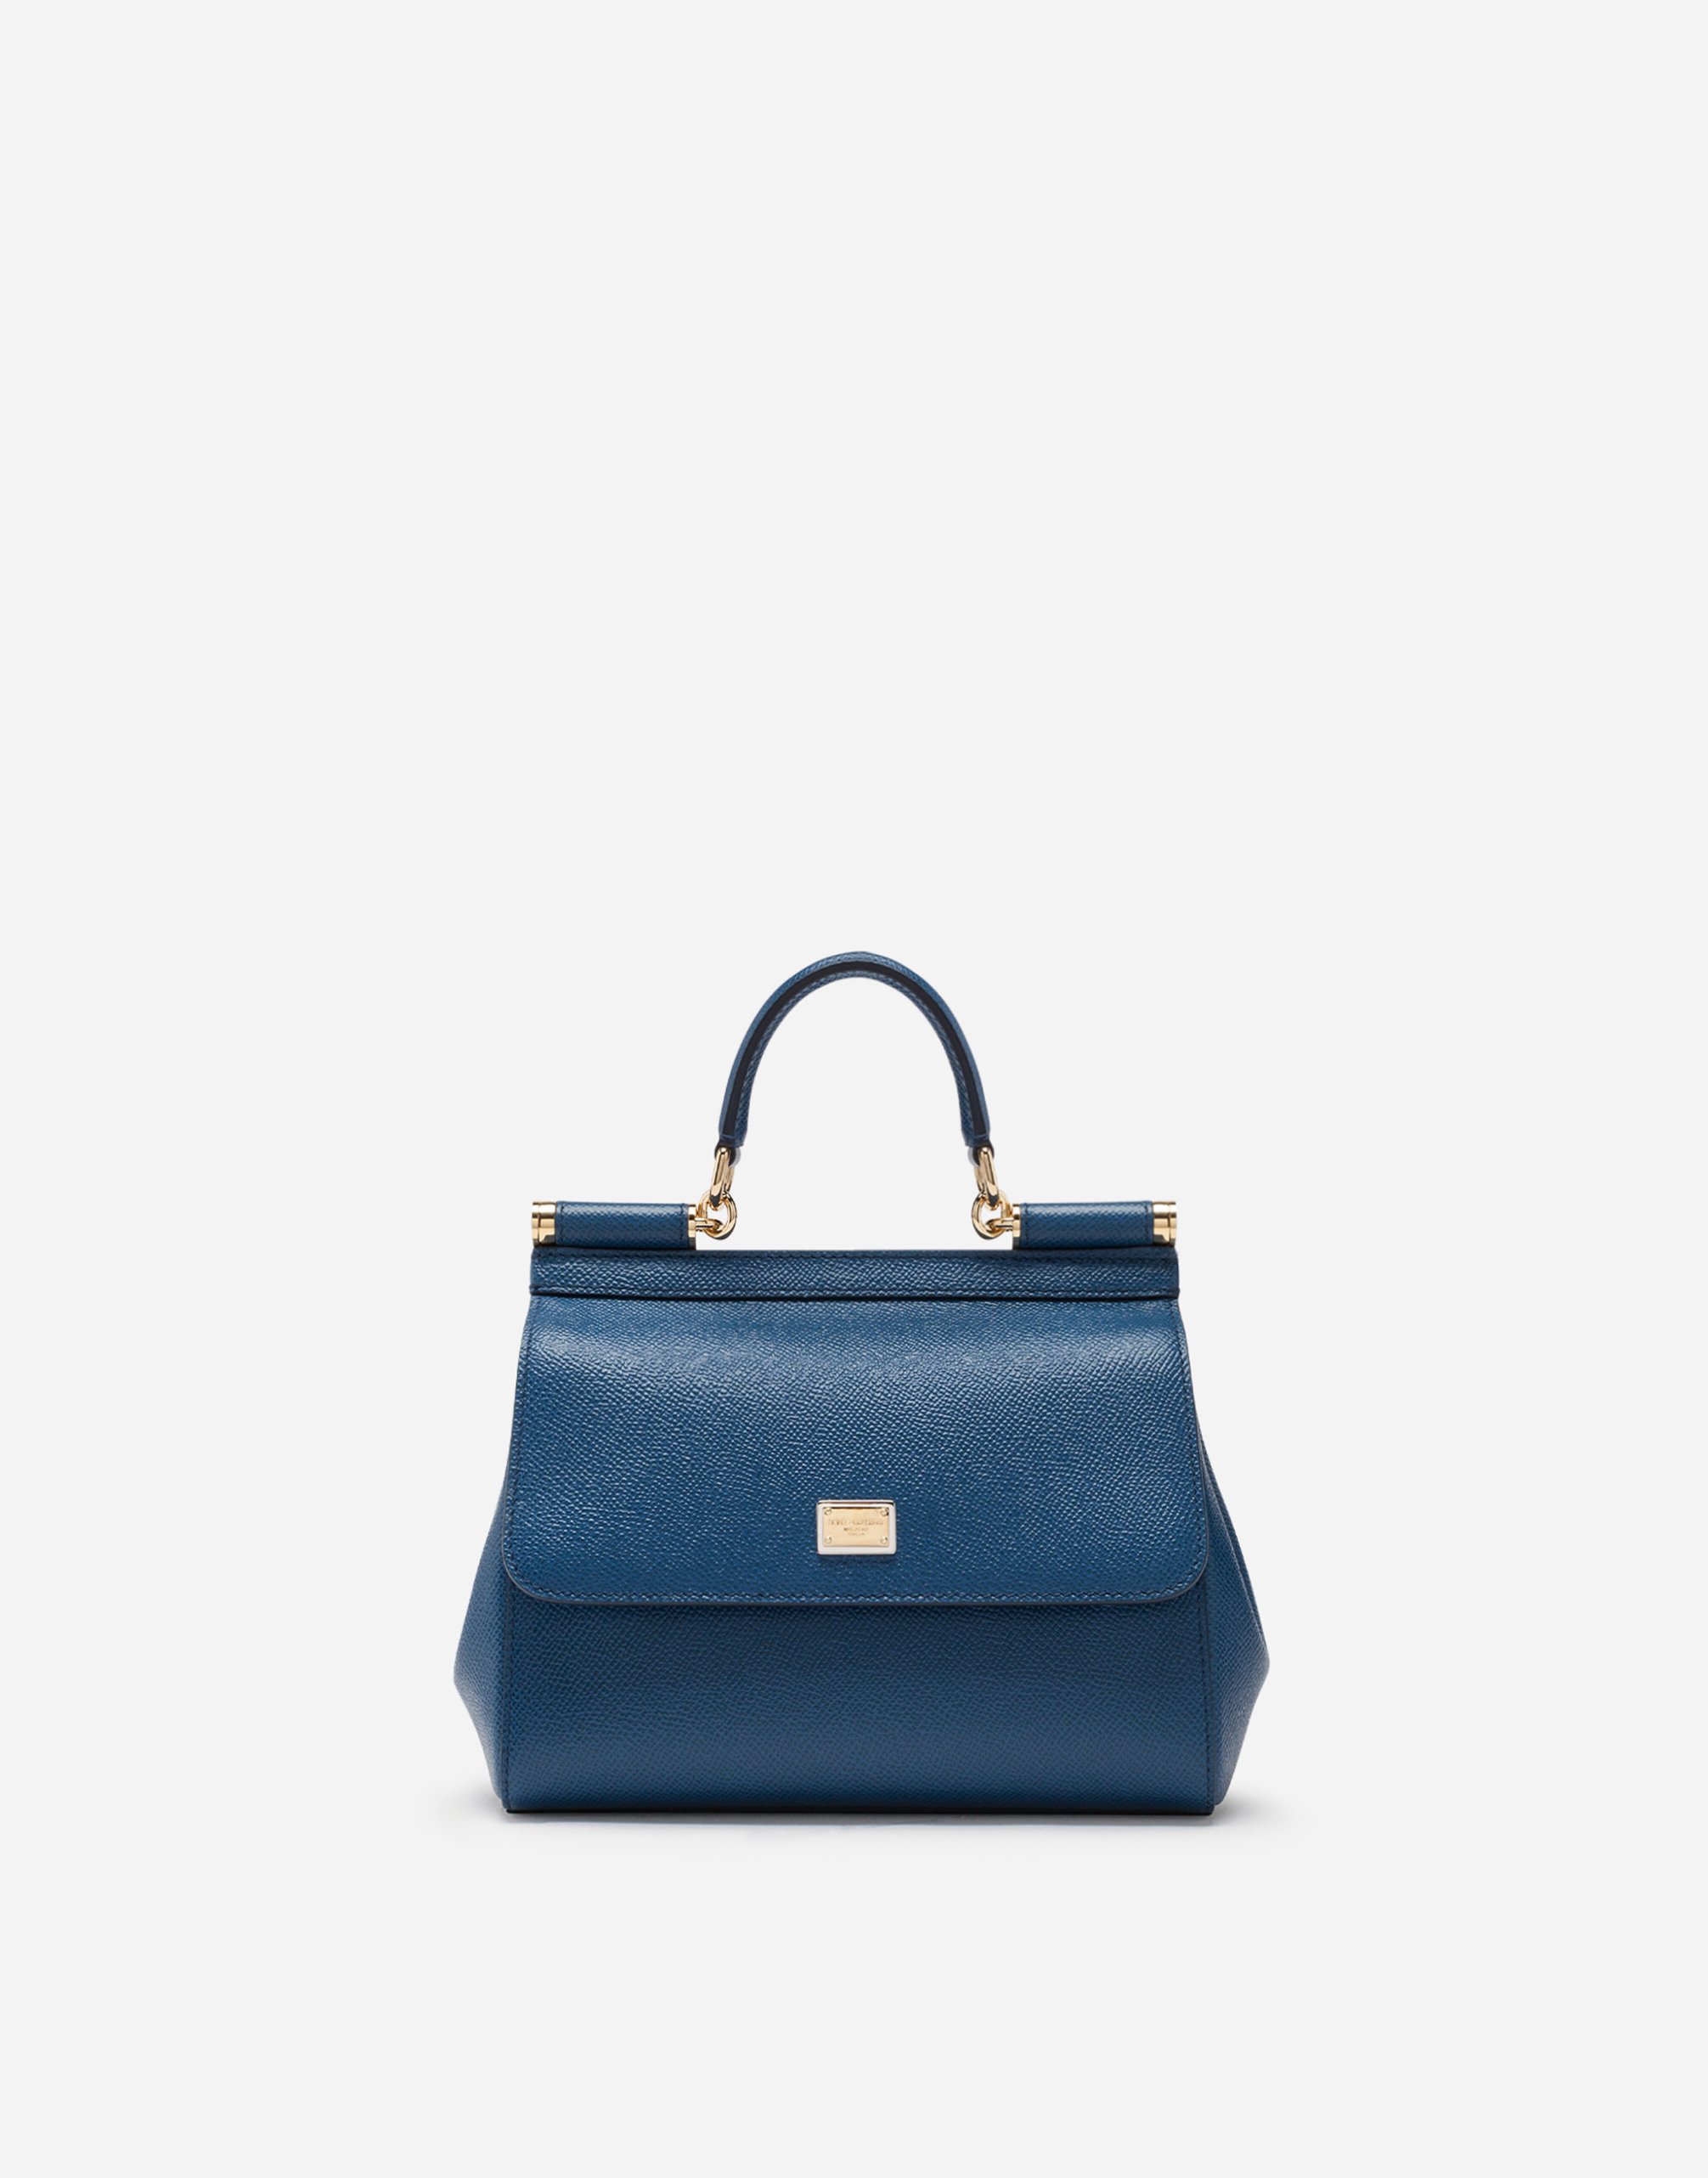 Medium Sicily handbag in Blue